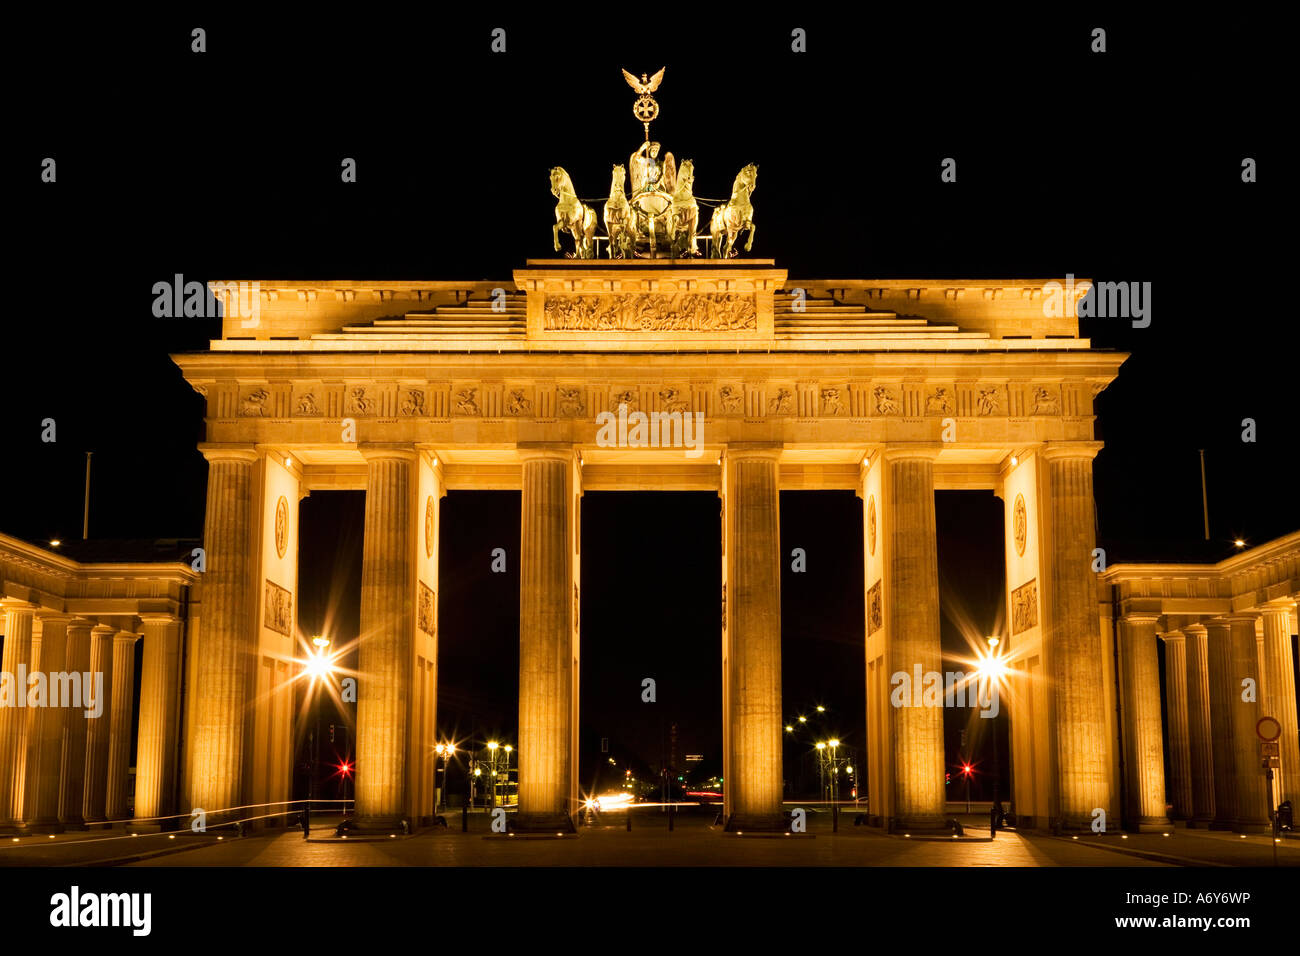 Puerta de Brandenburgo en Berlín Alemania nocturno Foto de stock